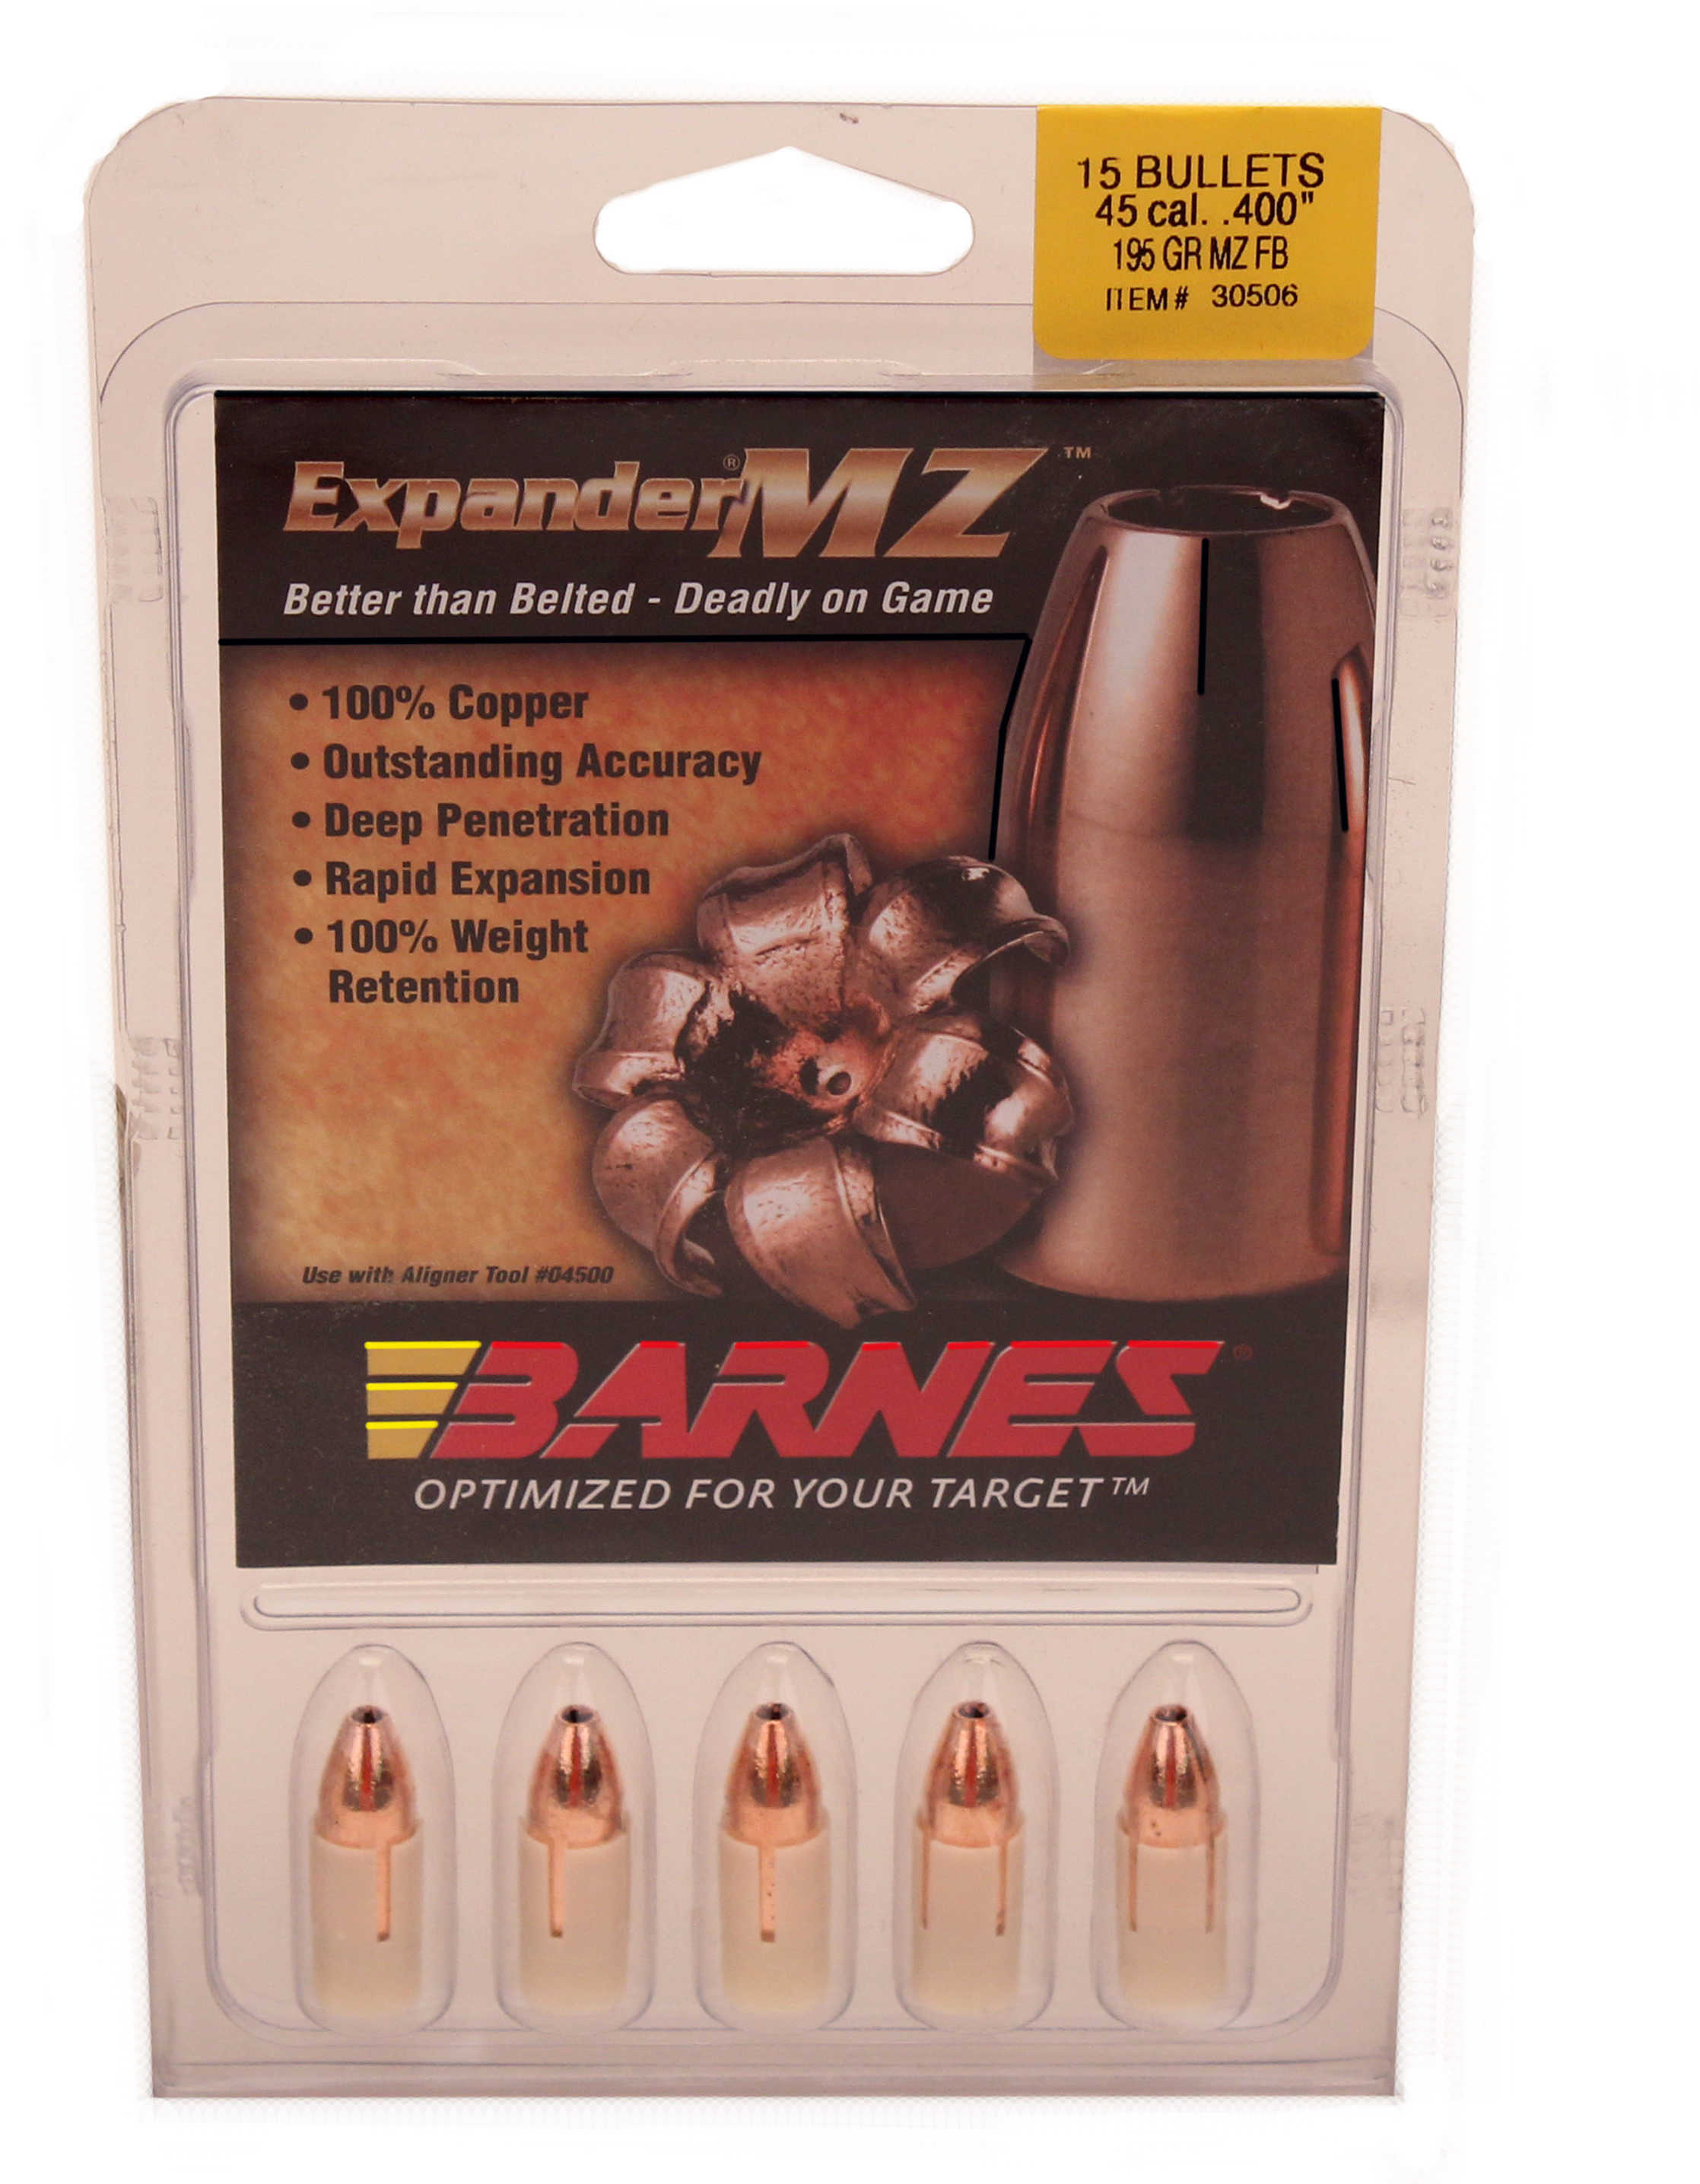 Barnes Bullets 45 Caliber Expander MZ 195 Grain Muzzleloader w/ Sabots (Per 15) 40016